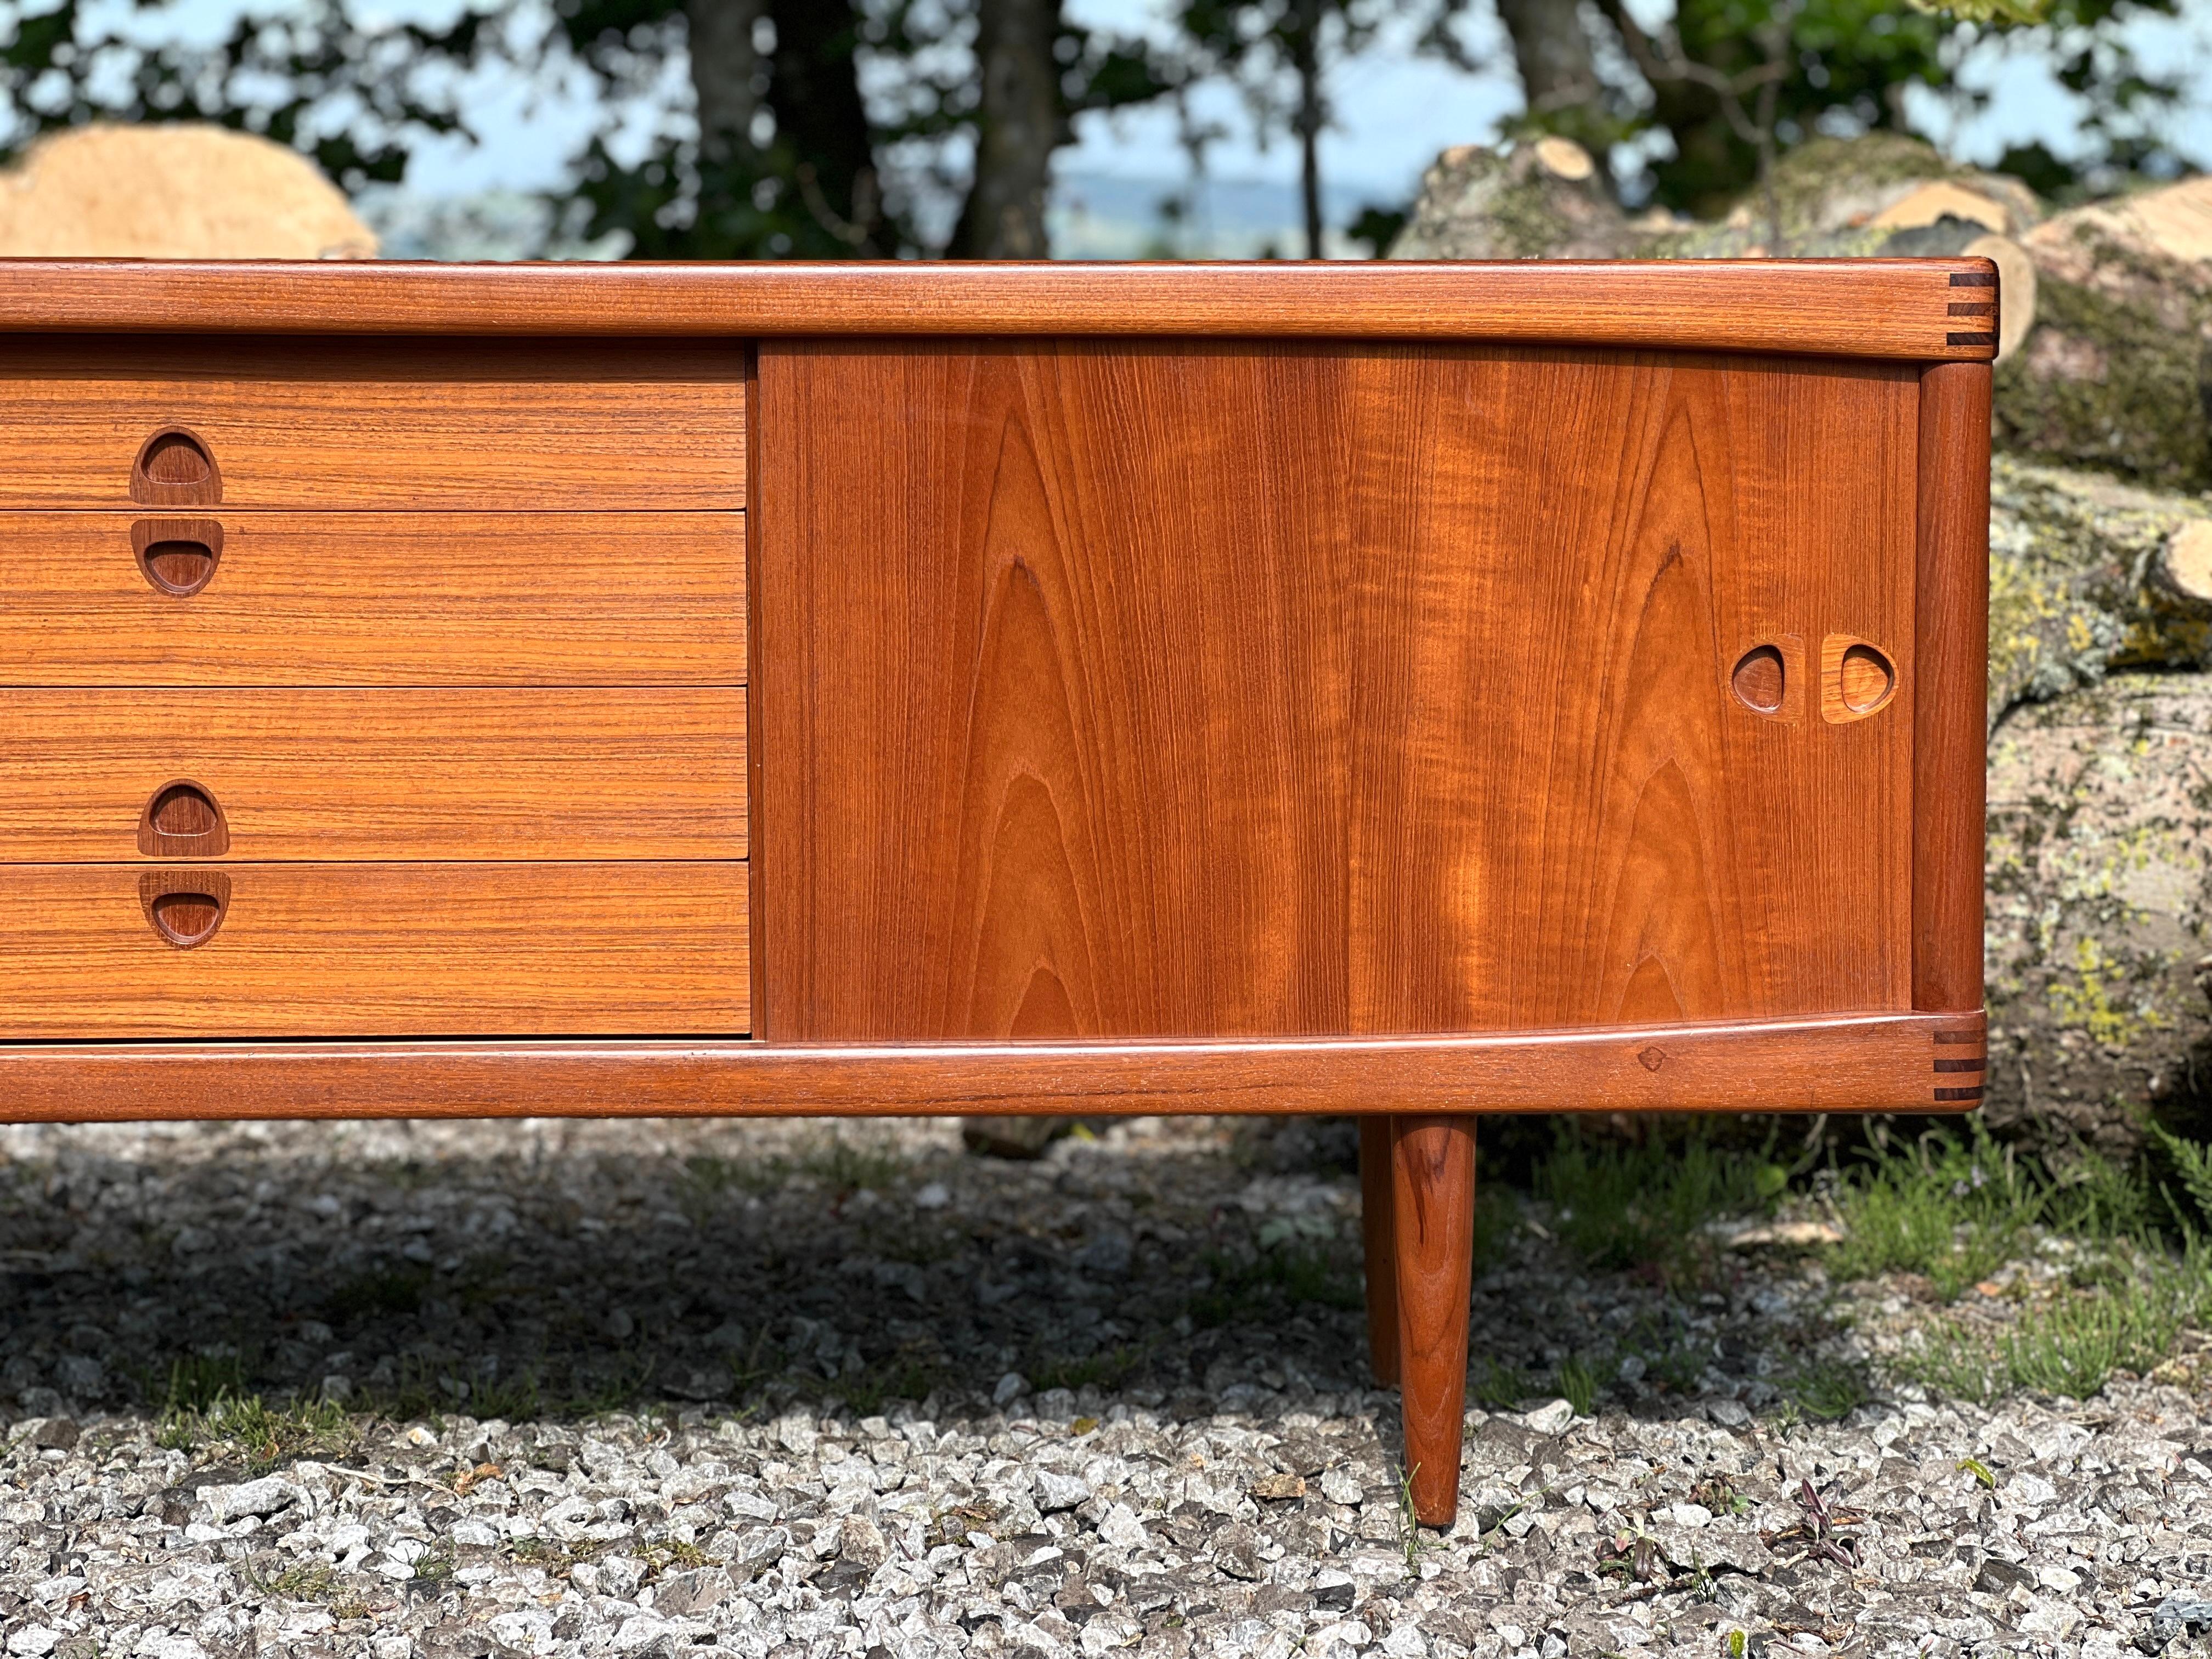 Henry Walter Klein entwarf dieses schöne Stück in den 60er Jahren in Dänemark für den bekannten, hochwertigen Möbelhersteller Bramin.

Das Sideboard hat ein ausgewogenes Design mit einer Reihe von Schubladen in der Mitte und zwei Schiebetüren, die